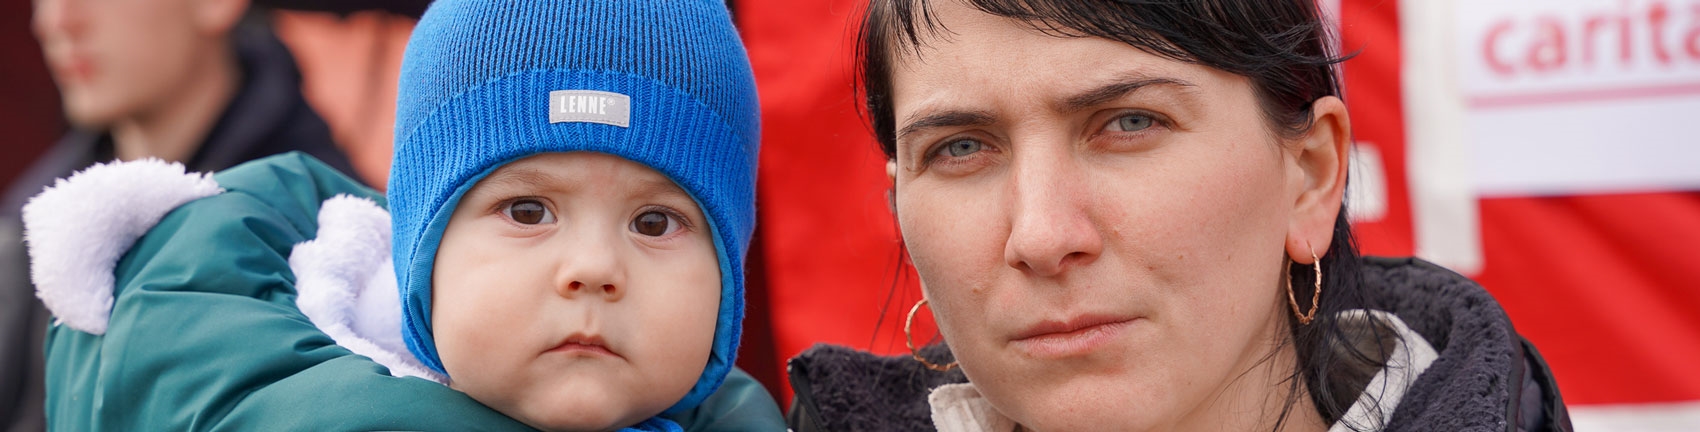 Mutter und Kind auf der Flucht im Ukraine-Krieg